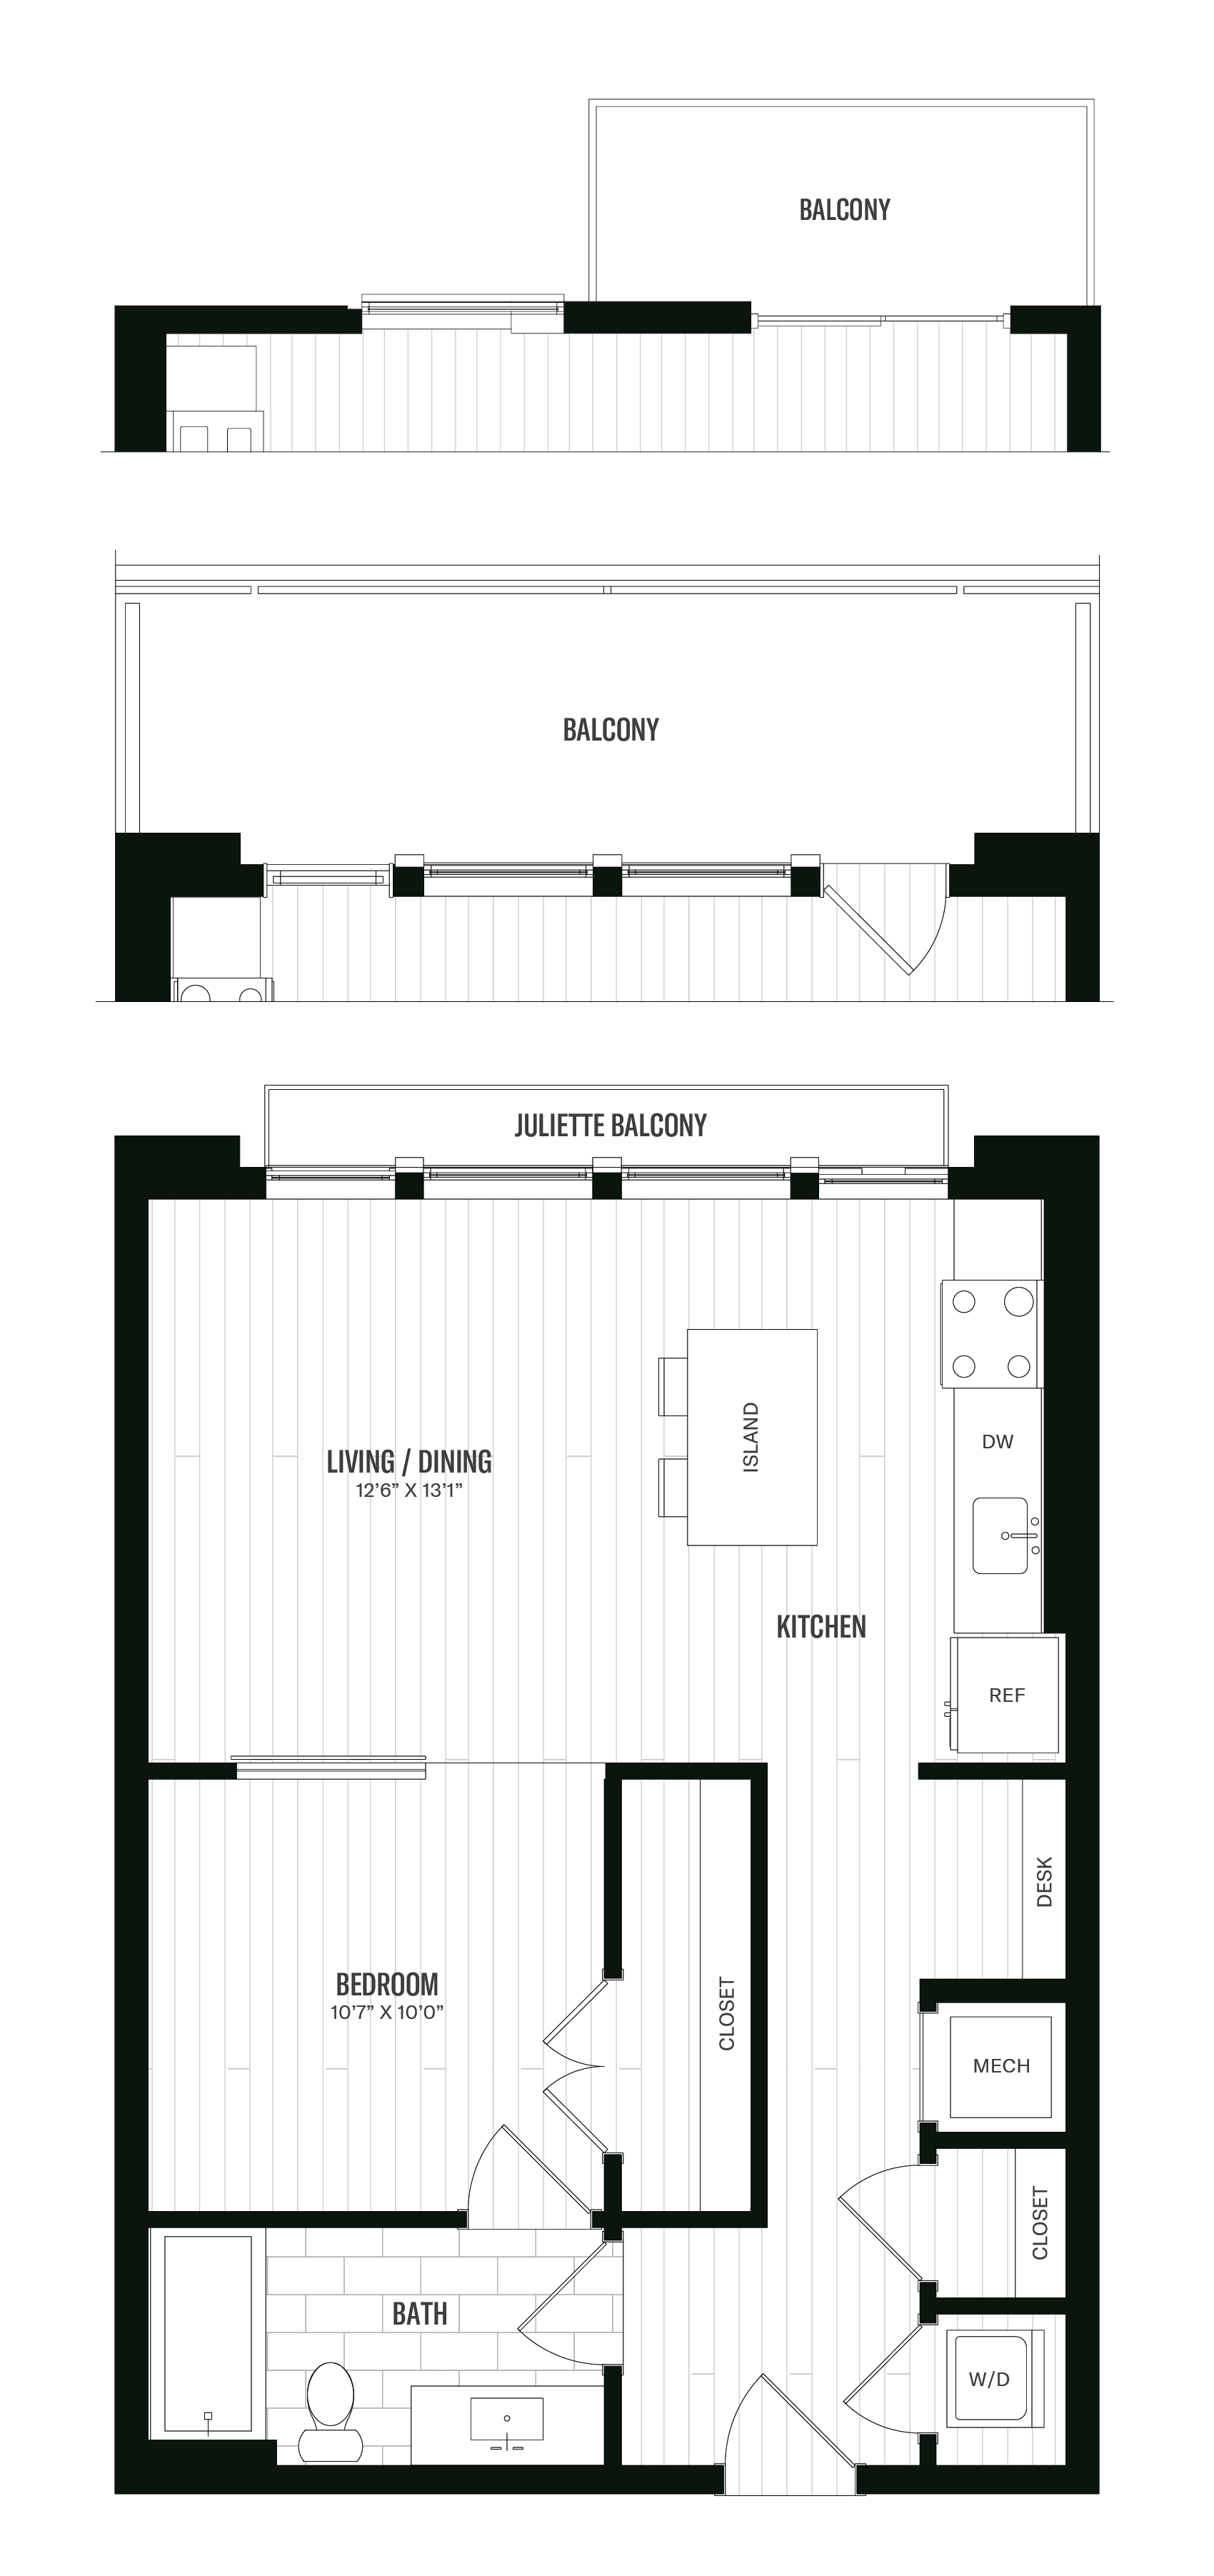 Floorplan image of unit 245